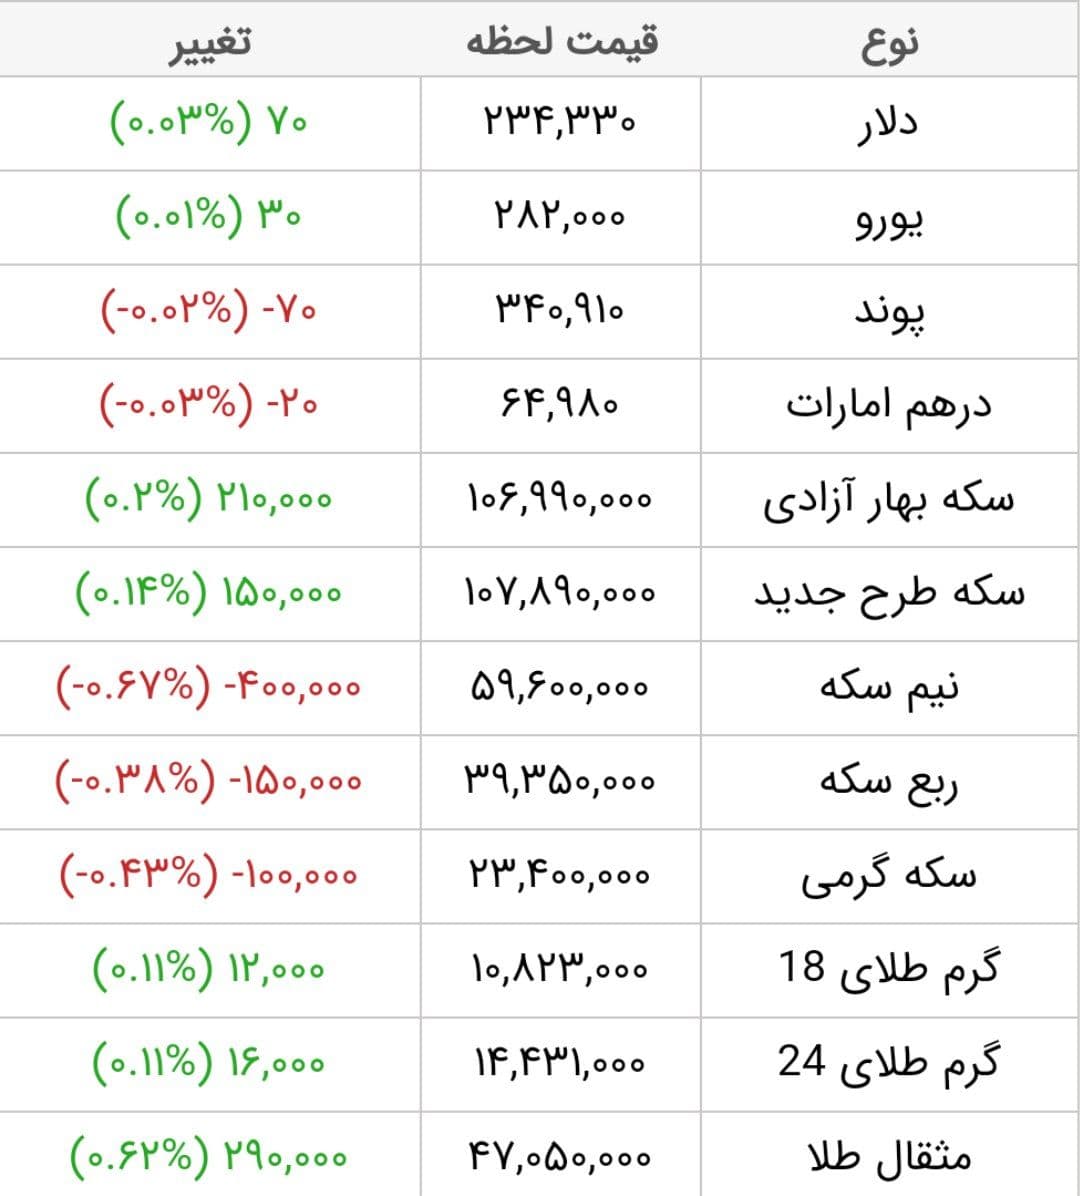 قیمت طلا، قیمت دلار، قیمت سکه و قیمت ارز امروز پنجشنبه ۱۳ خرداد ماه ۱۴۰۰